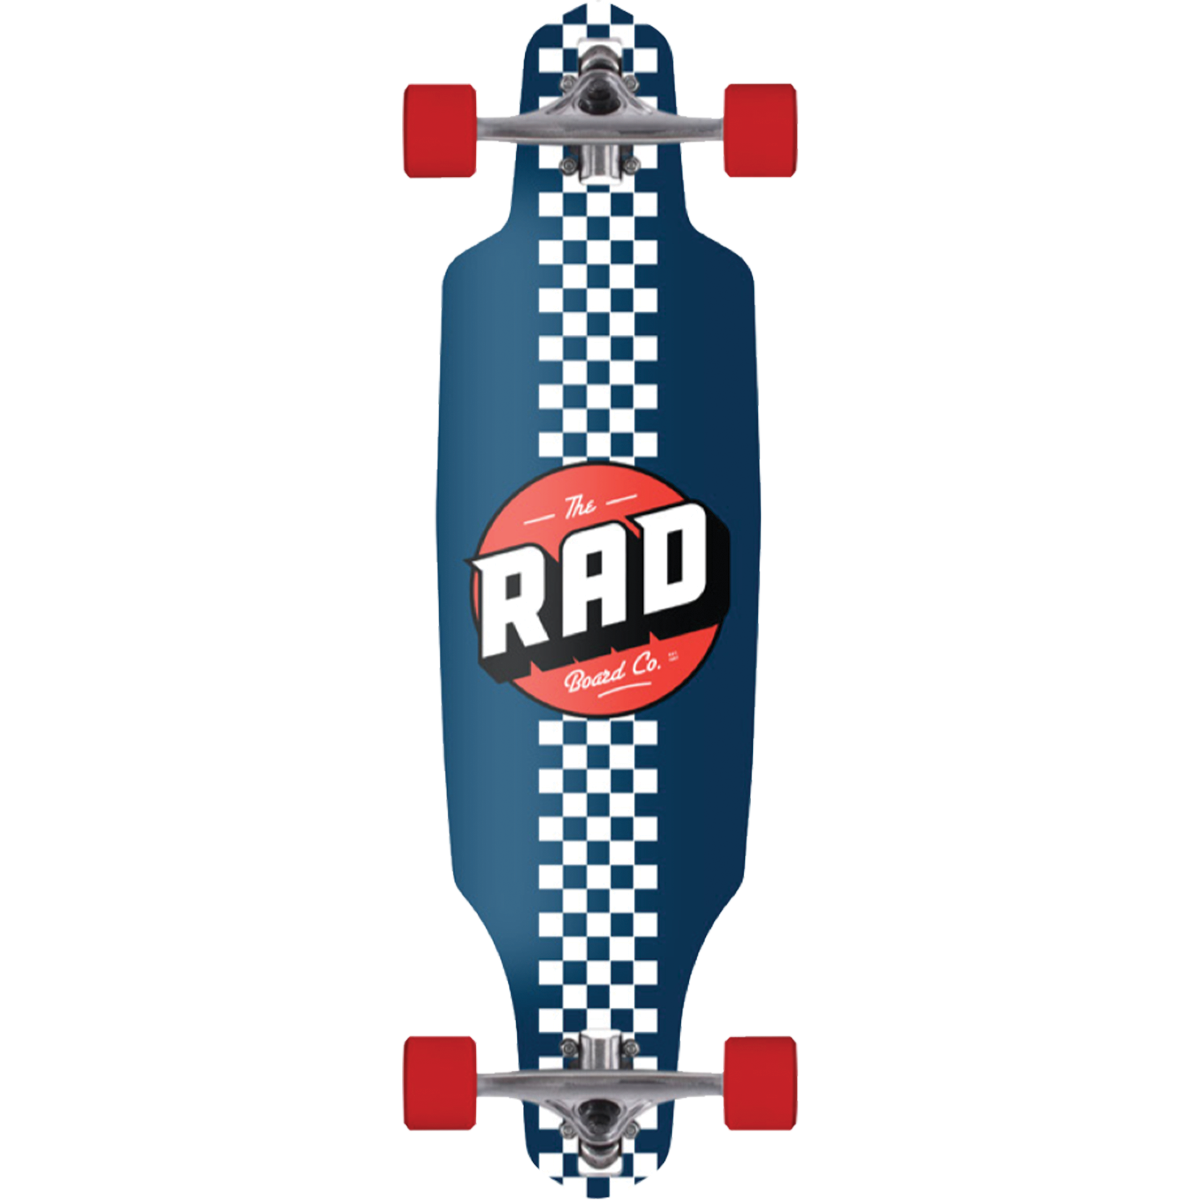 Rad Checker, Classic & Retro Complete Skateboards